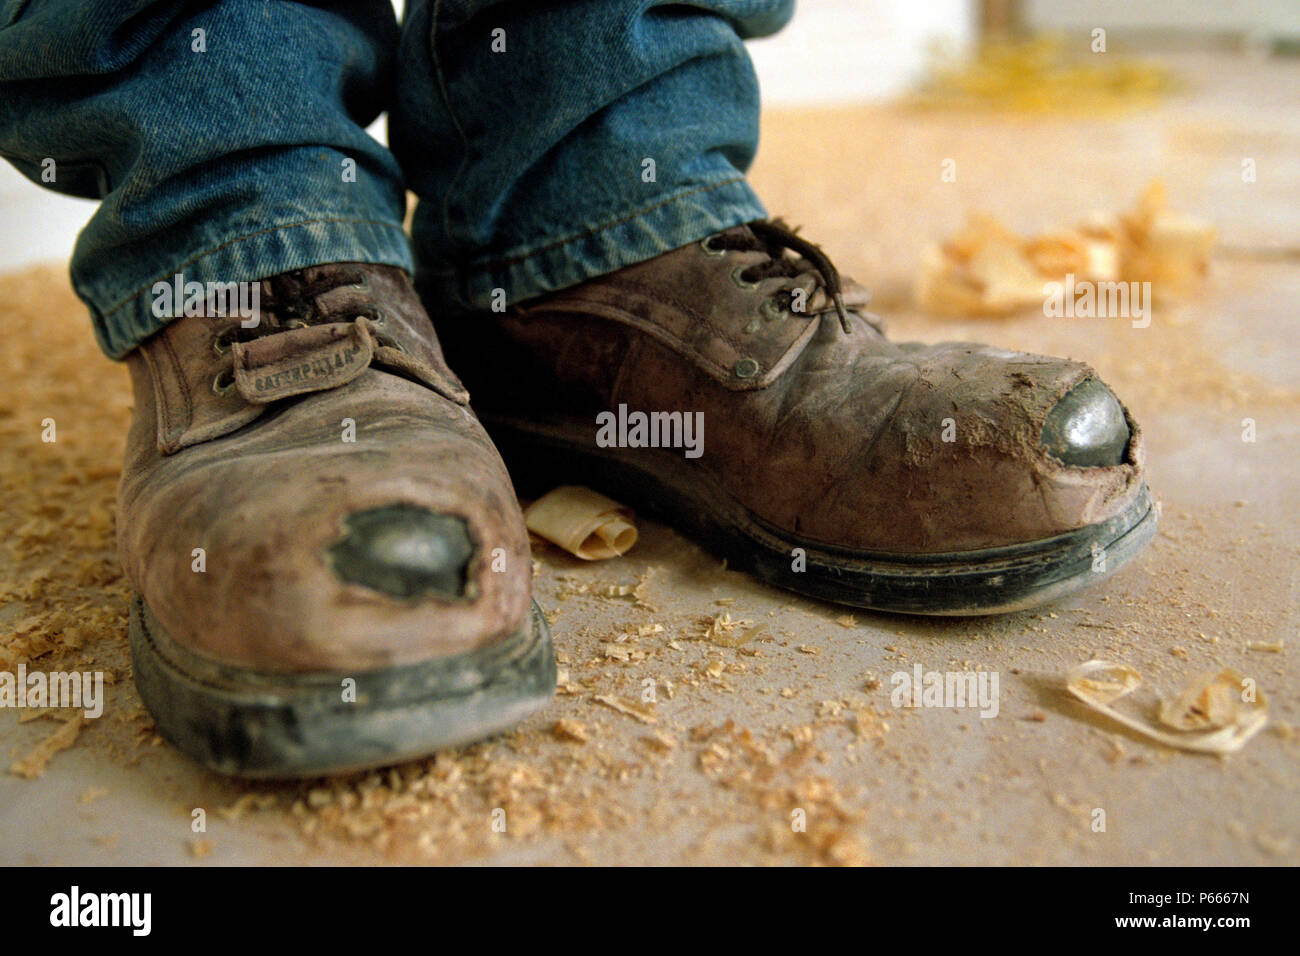 worn work boots